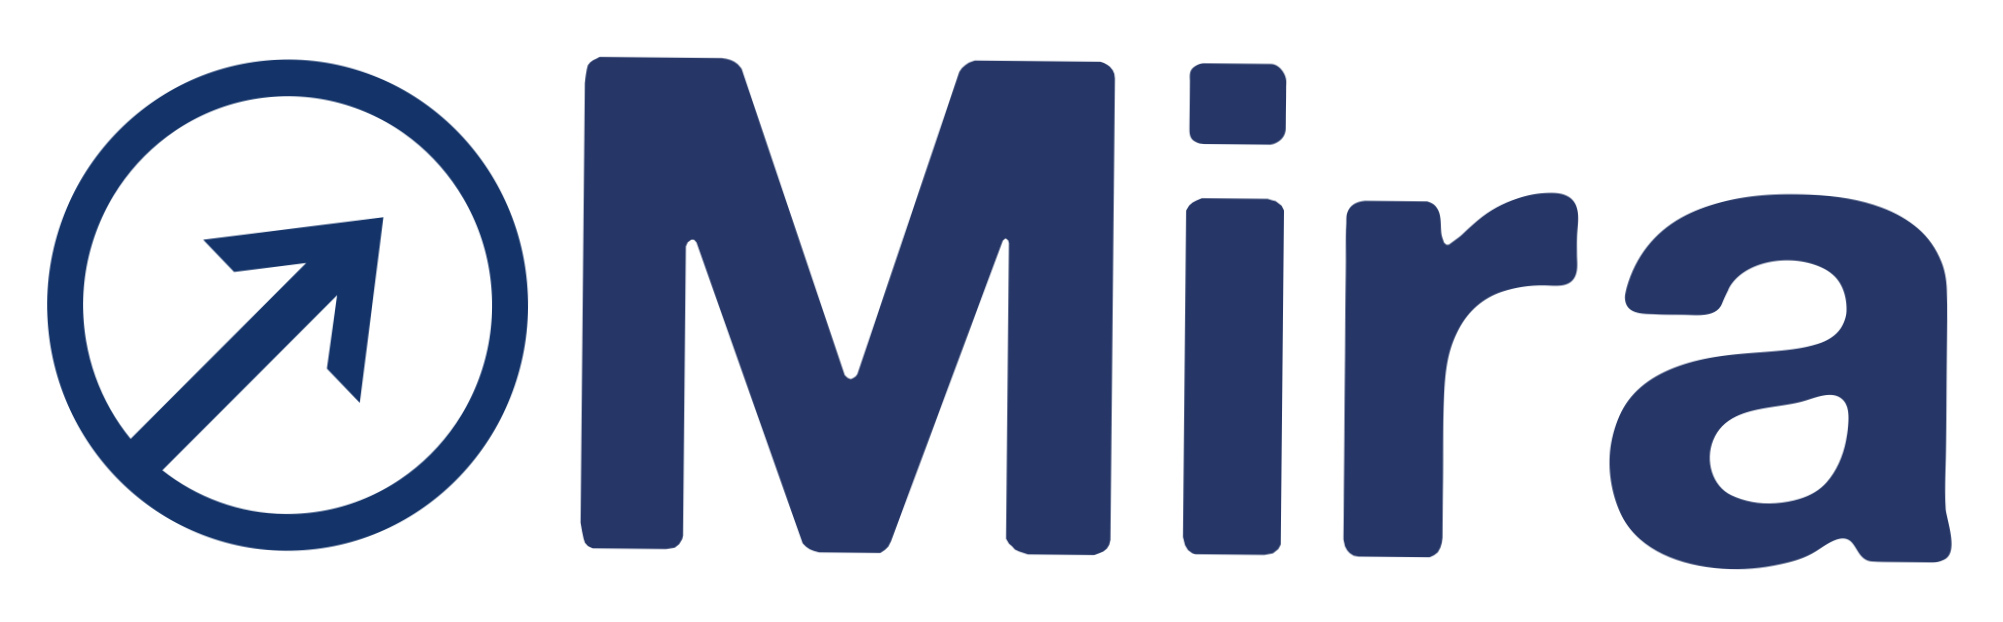 Gruppo Mira - Formazione, servizi, ebook